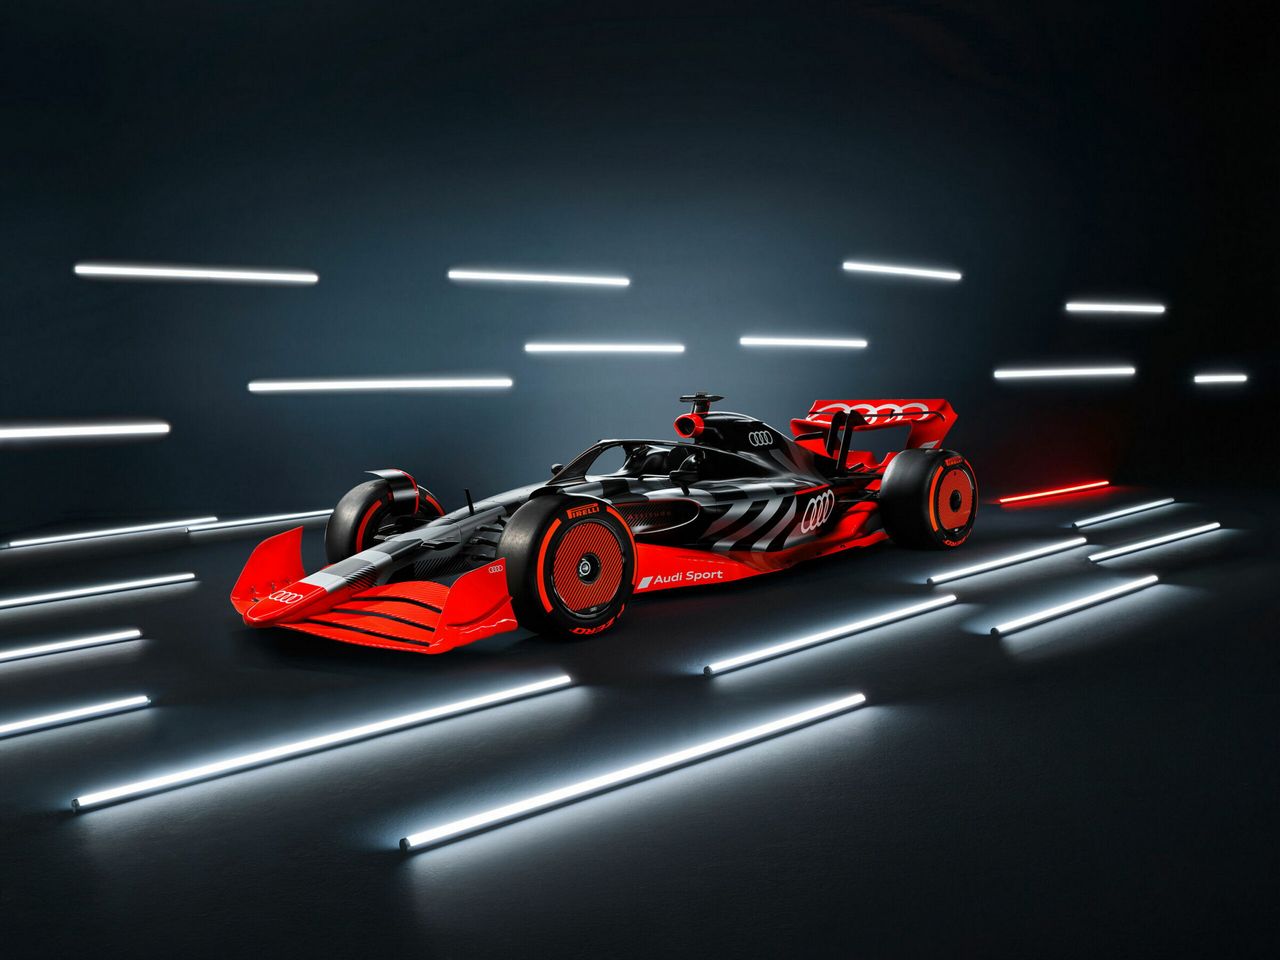 Audi dołączy do F1 w 2026 roku, ale już pokazało prototyp bolidu